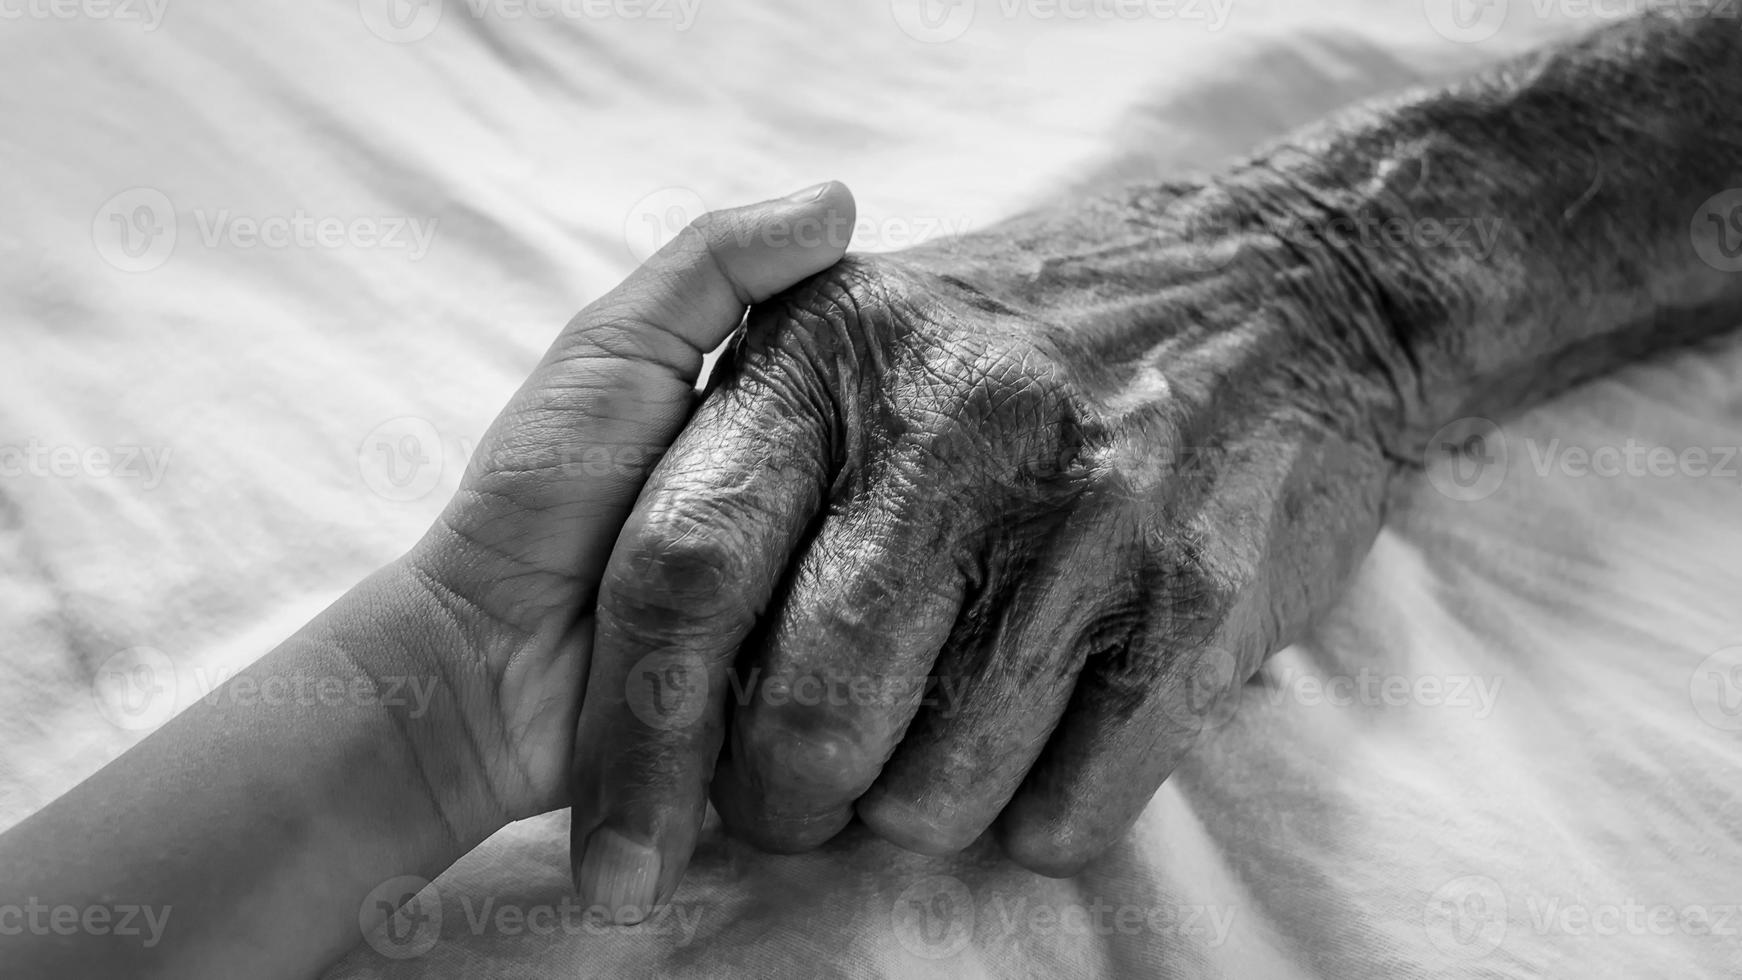 händerna på den gamle mannen och ett barns hand på den vita sängen på ett sjukhus. foto